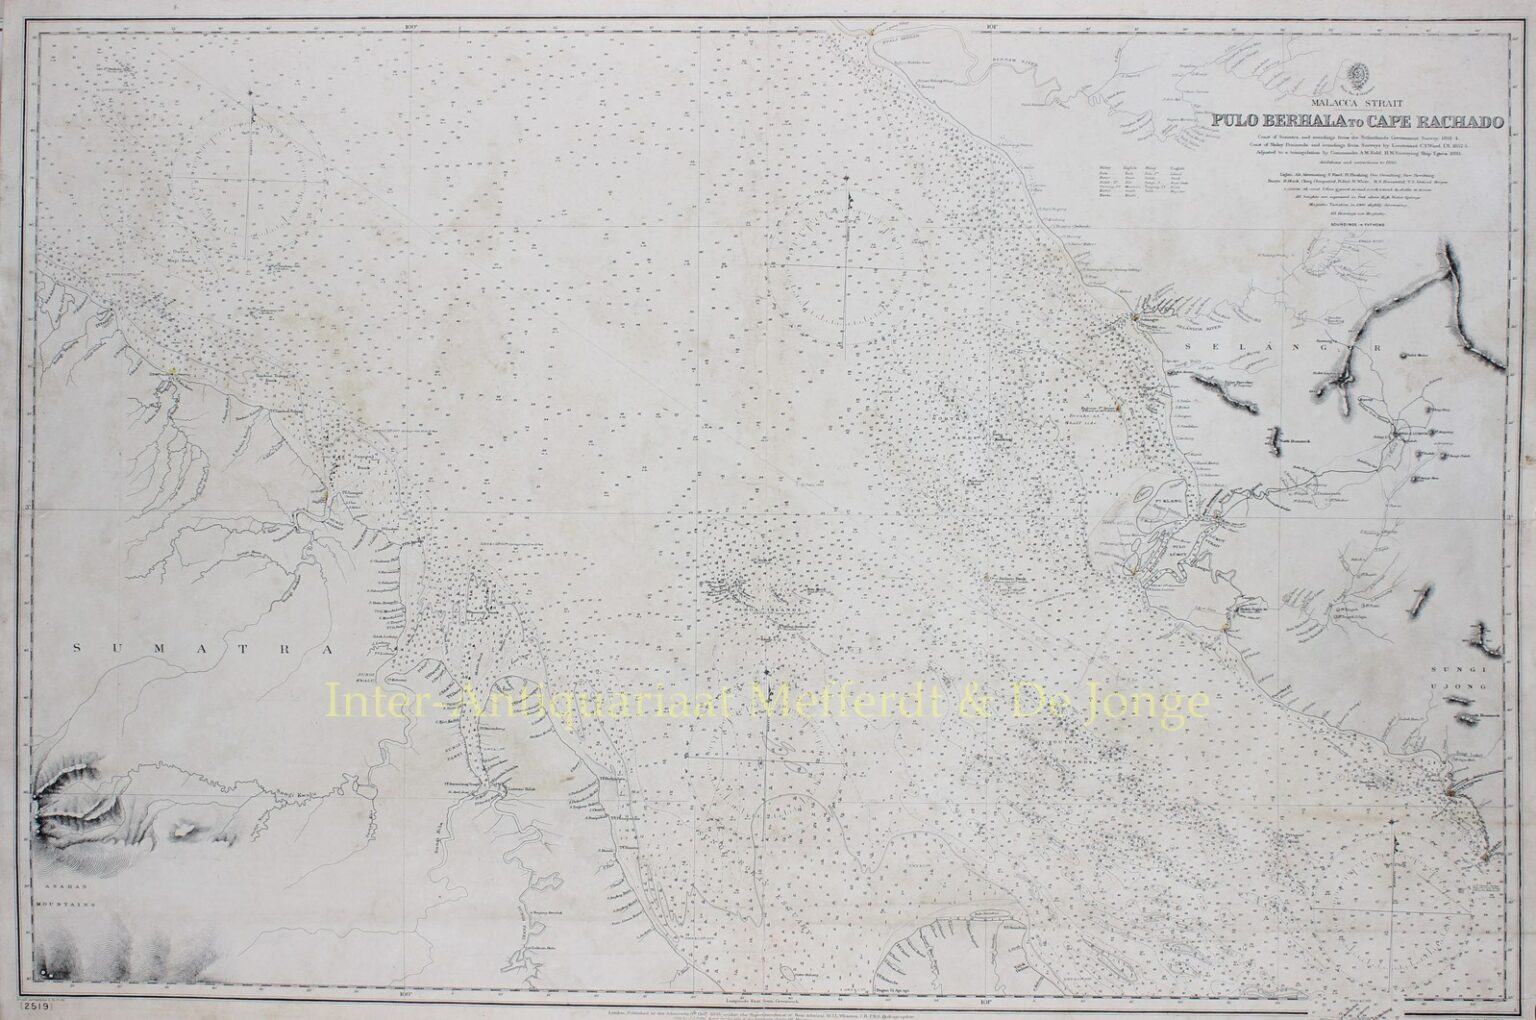 Malacca Strait Kuala Lumpur 1895 1536x1020 